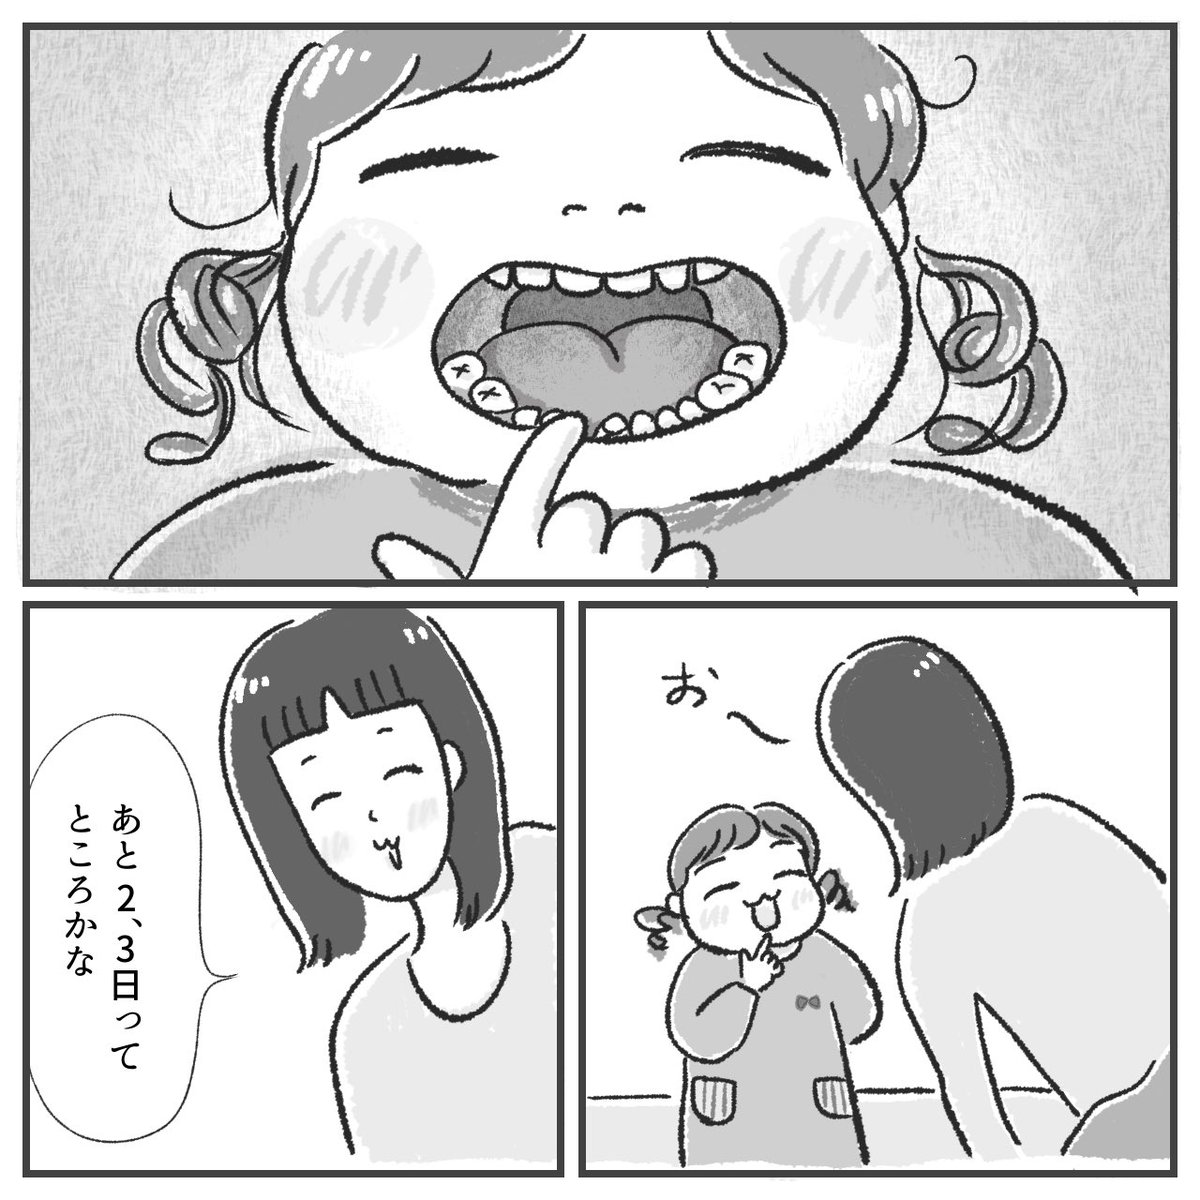 最近よく思うこと(1/2)
#漫画が読めるハッシュタグ 